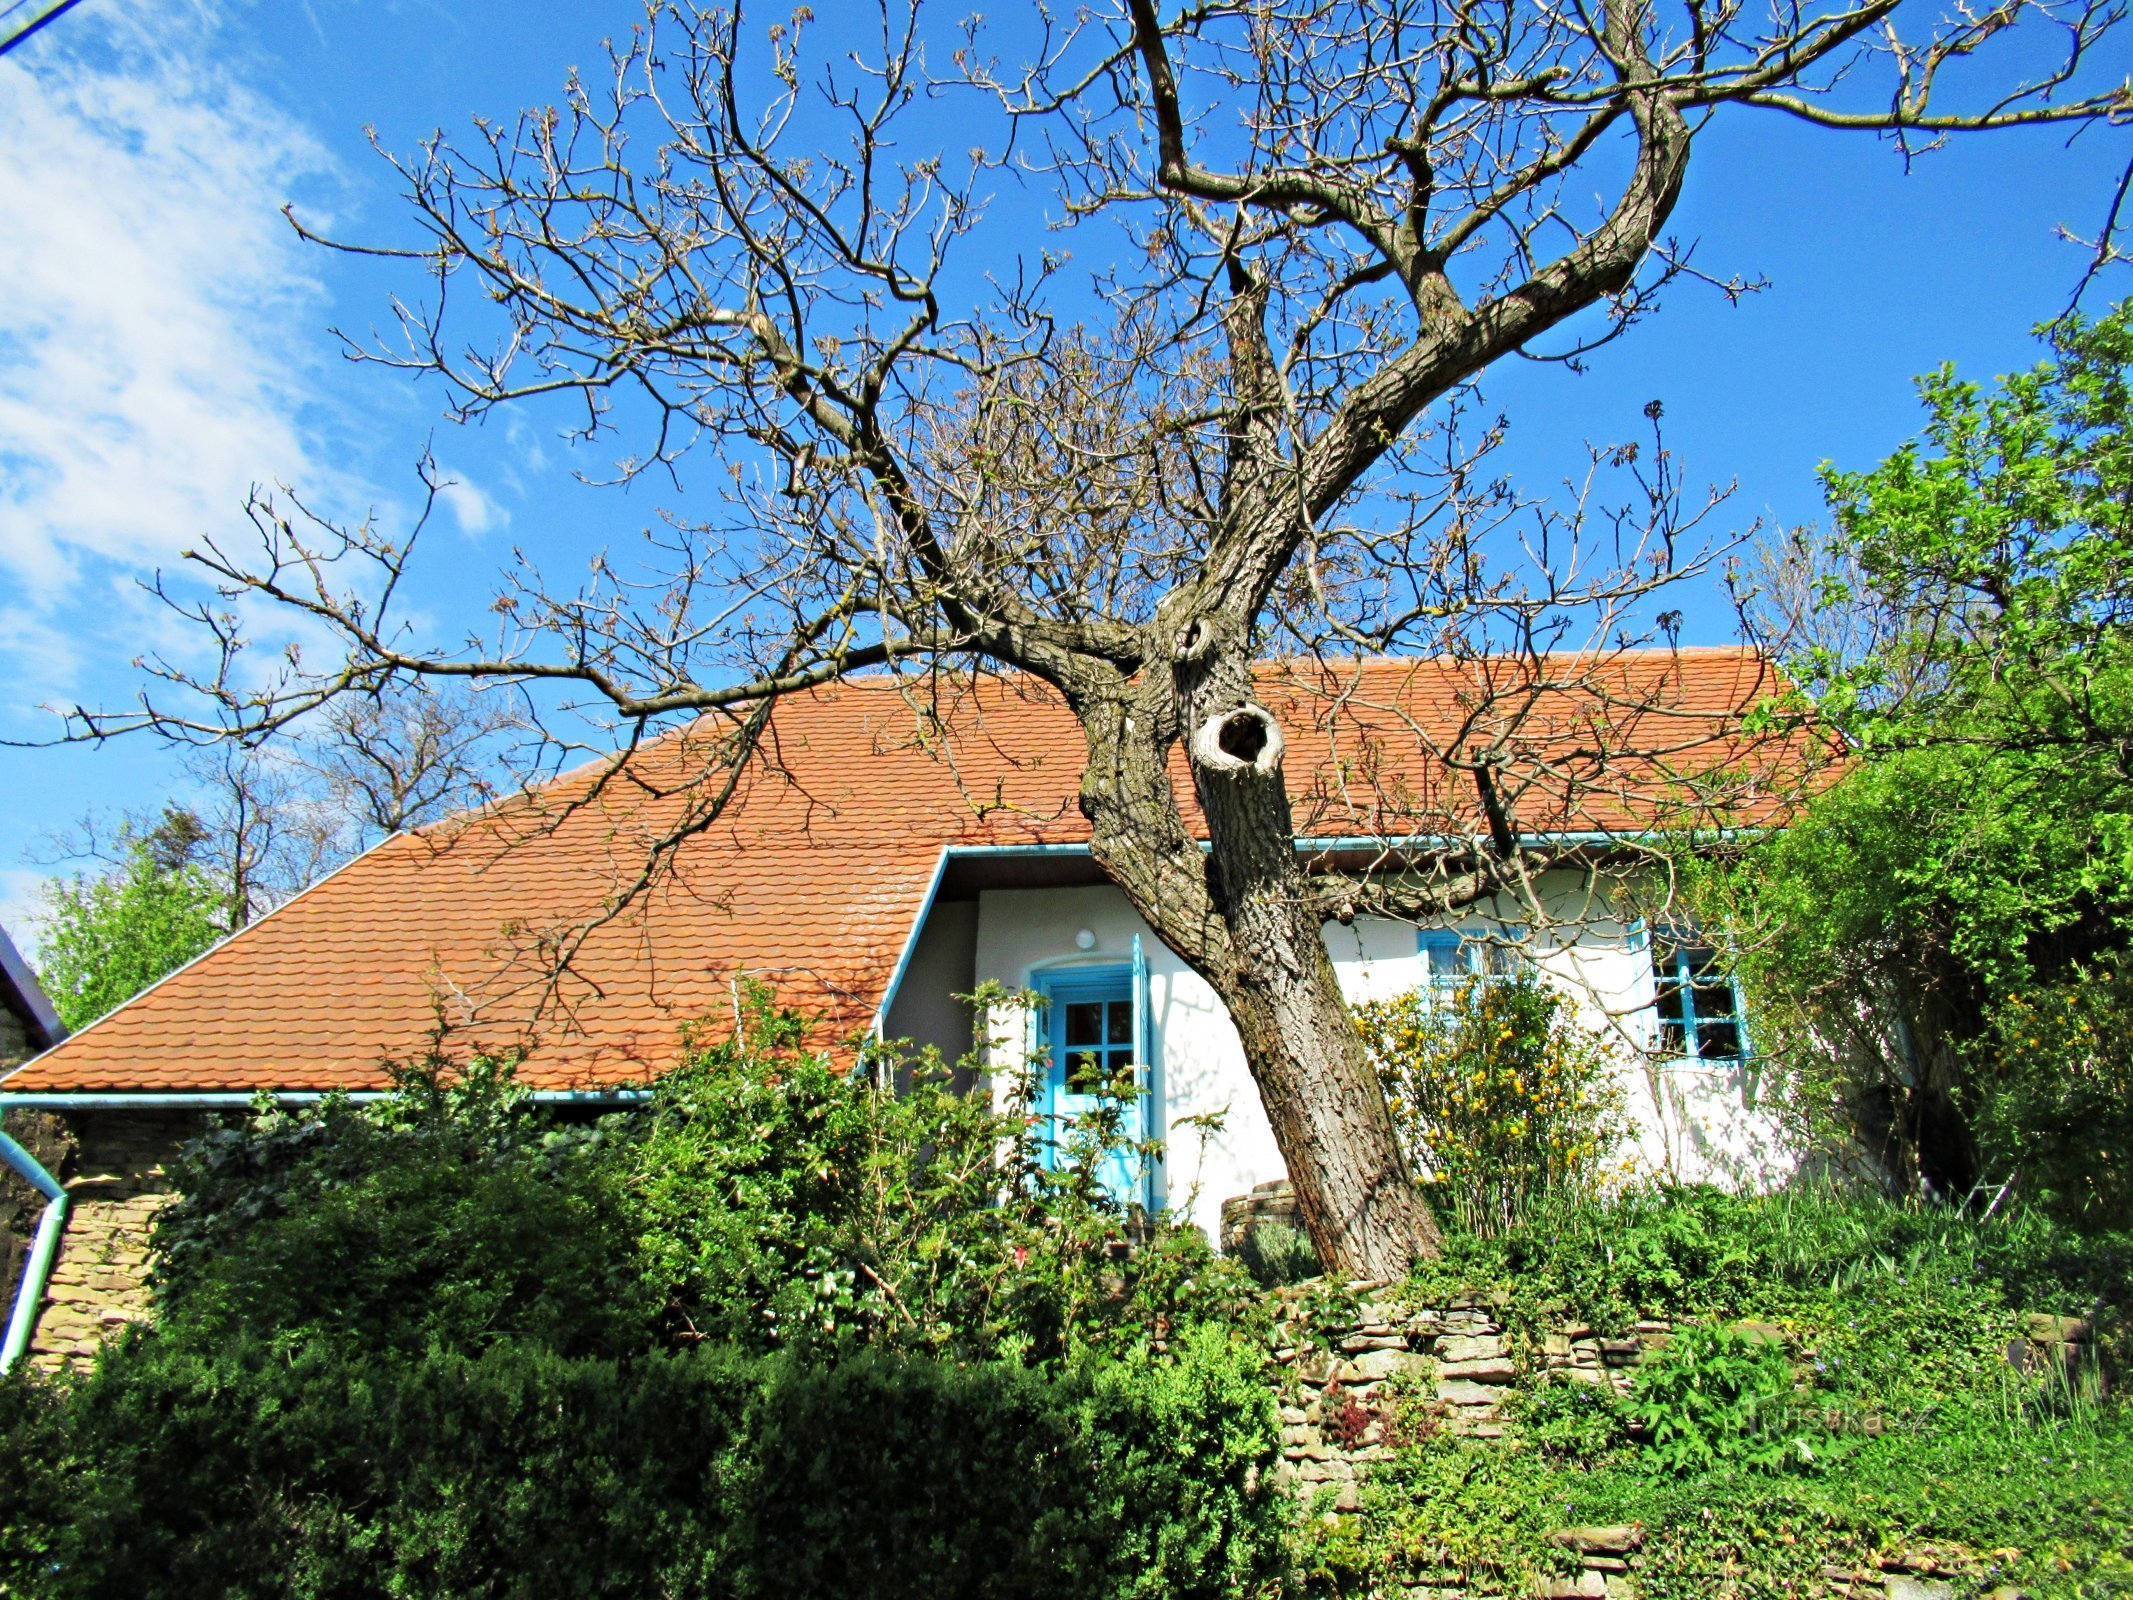 Byn Javorník, pittoreska hus i området - Kopanky i byn Javorník i Slovácko